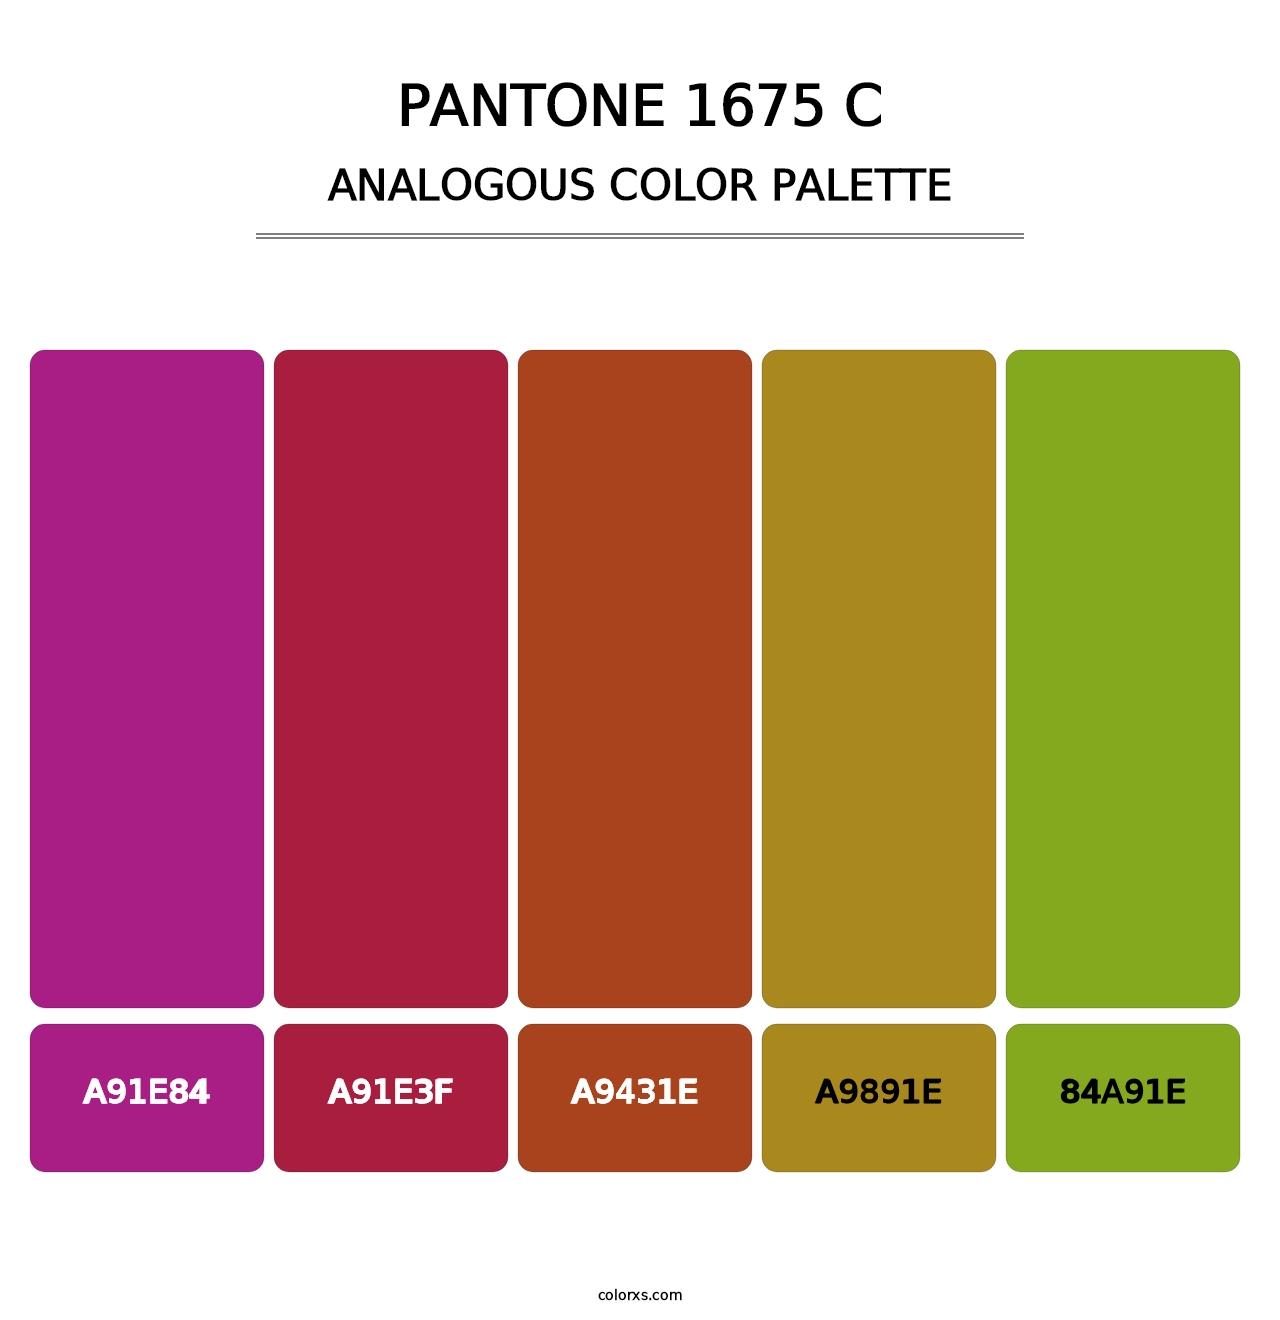 PANTONE 1675 C - Analogous Color Palette